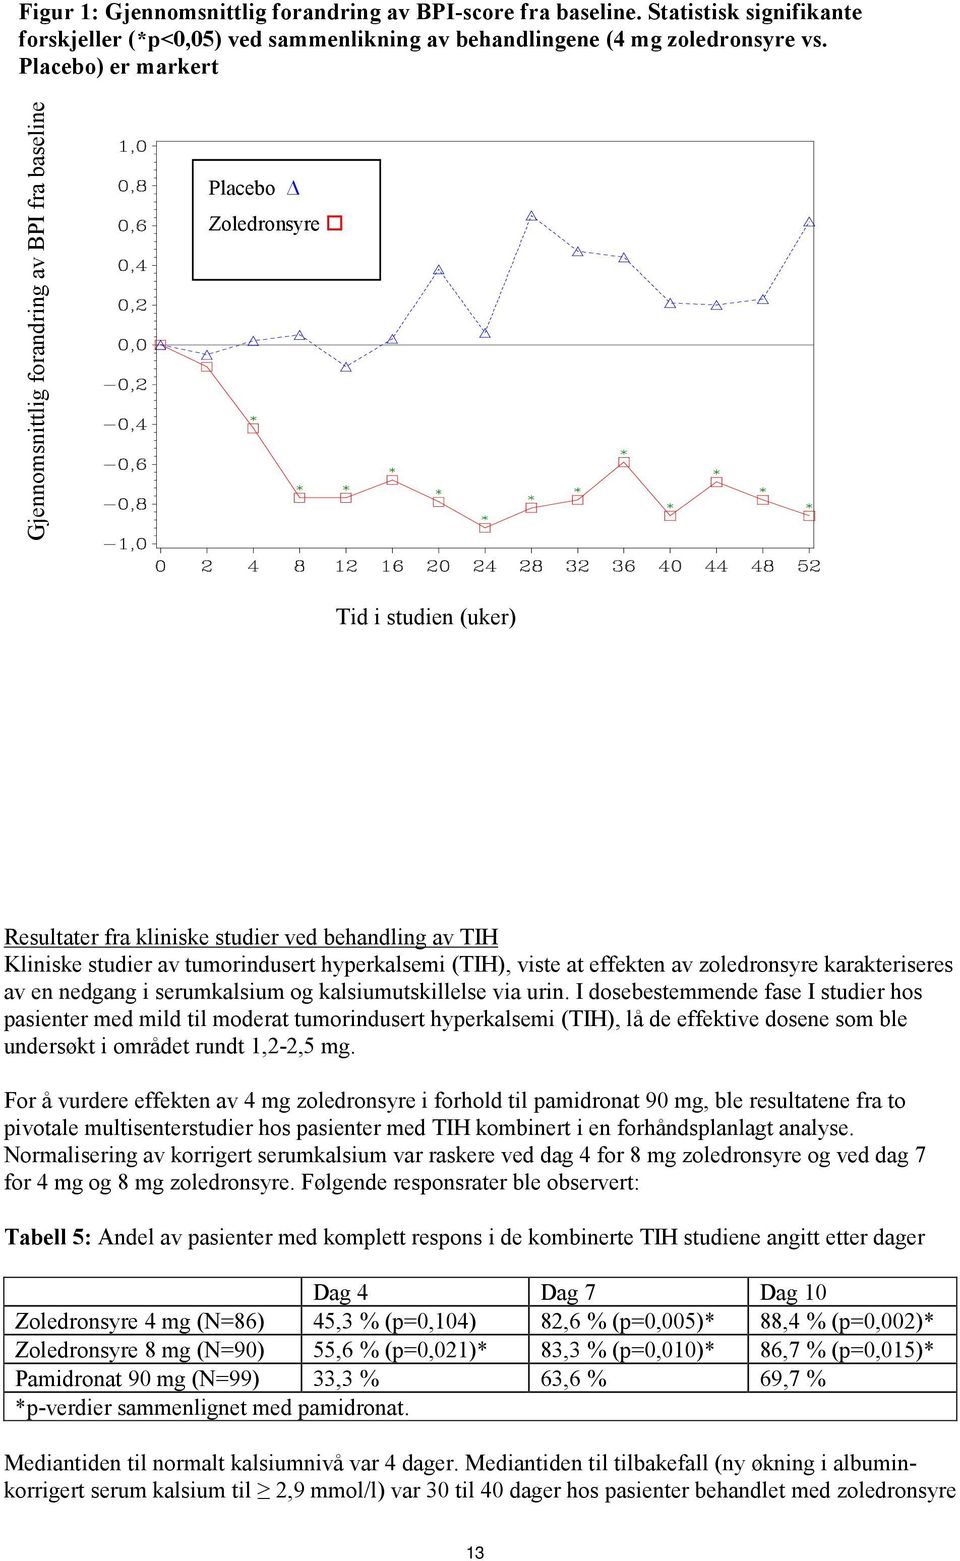 hyperkalsemi (TIH), viste at effekten av zoledronsyre karakteriseres av en nedgang i serumkalsium og kalsiumutskillelse via urin.